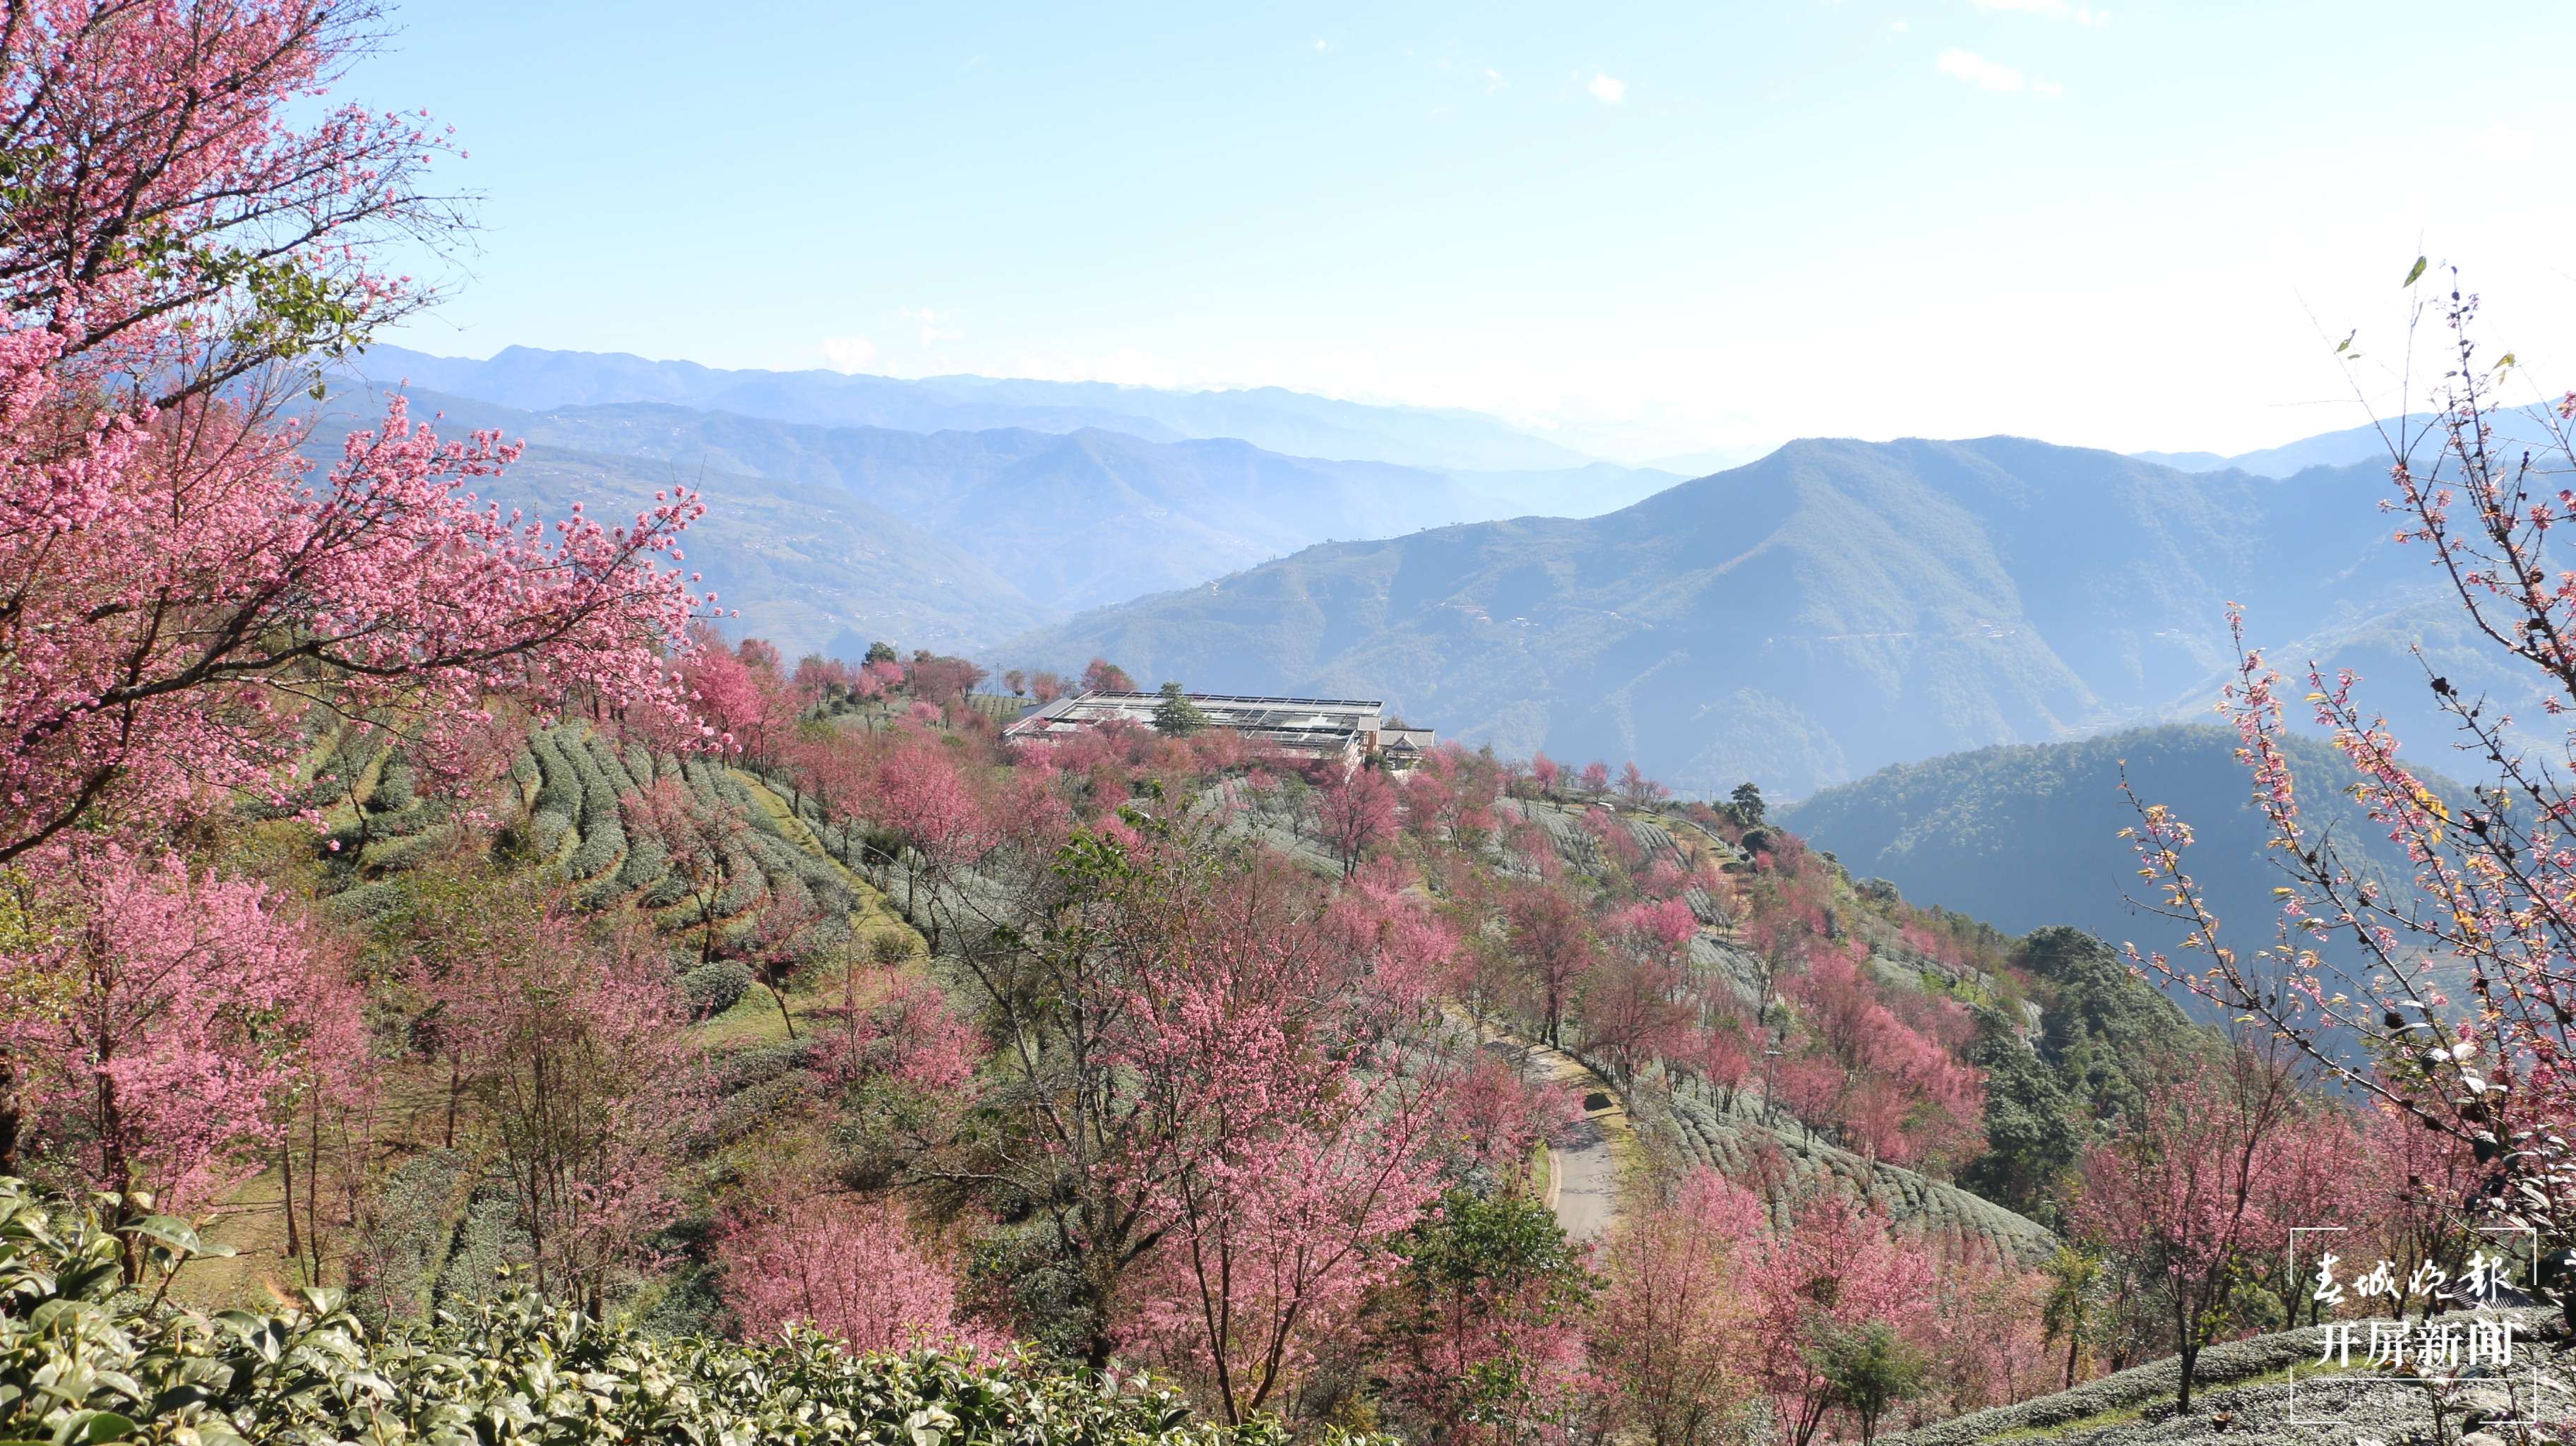 一般而言，樱花花期大多在2、3月份，而云南大理无量山的樱花